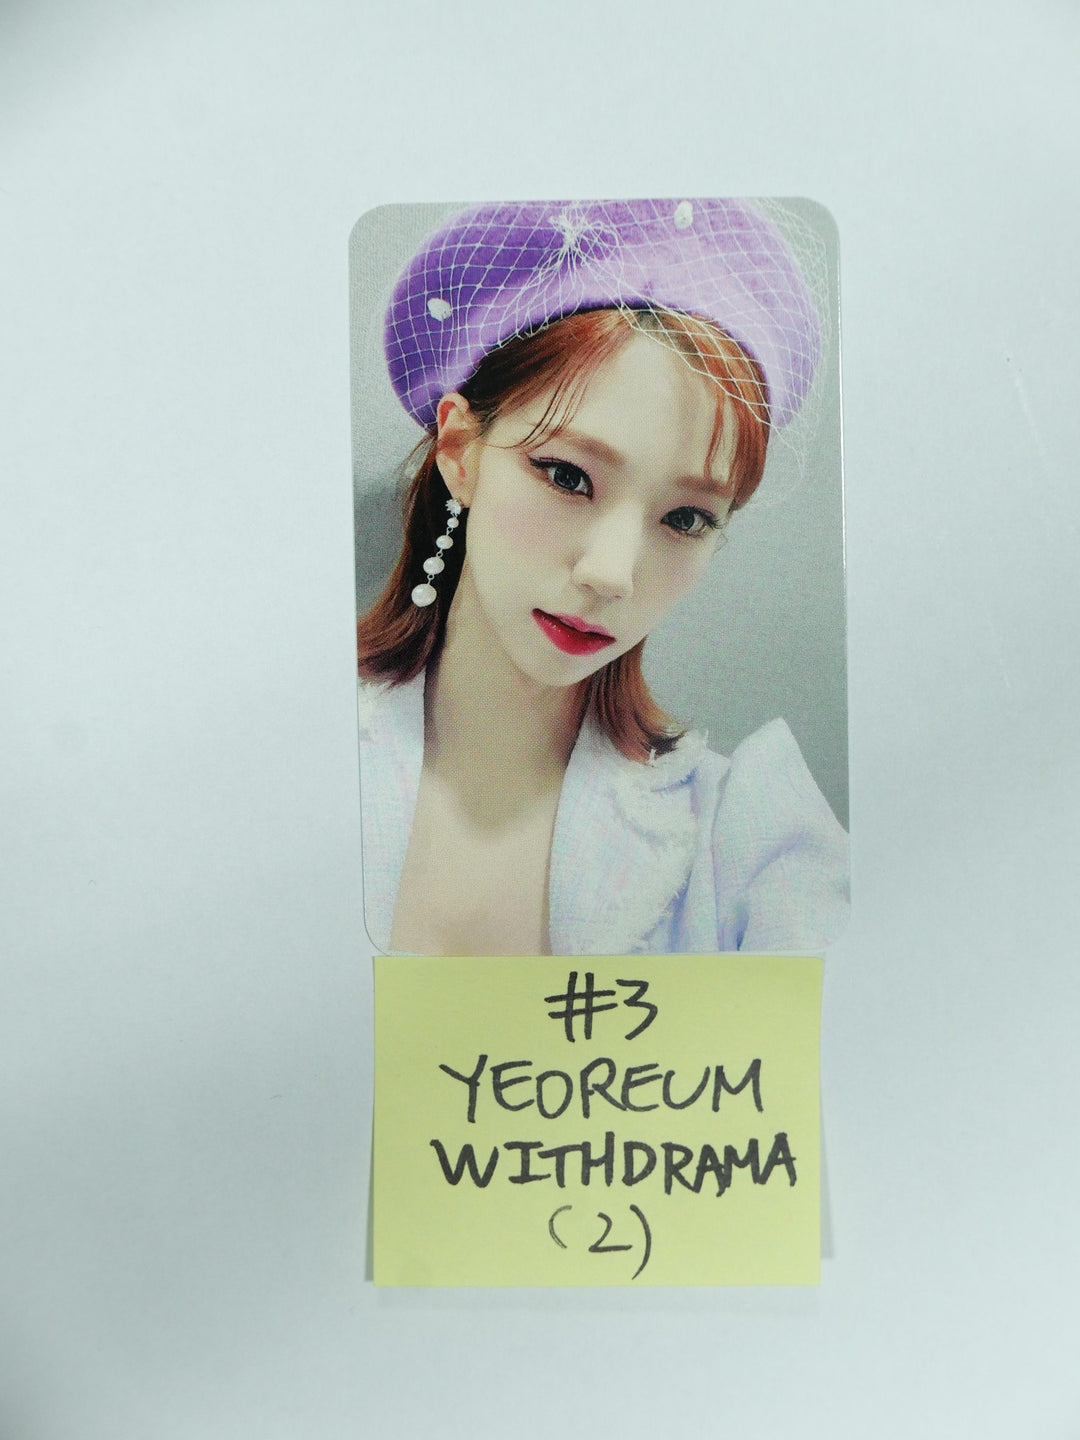 우주소녀 쵸컴 "슈퍼여퍼!" 2nd Single - Withdrama 팬사인회 포토카드 2차